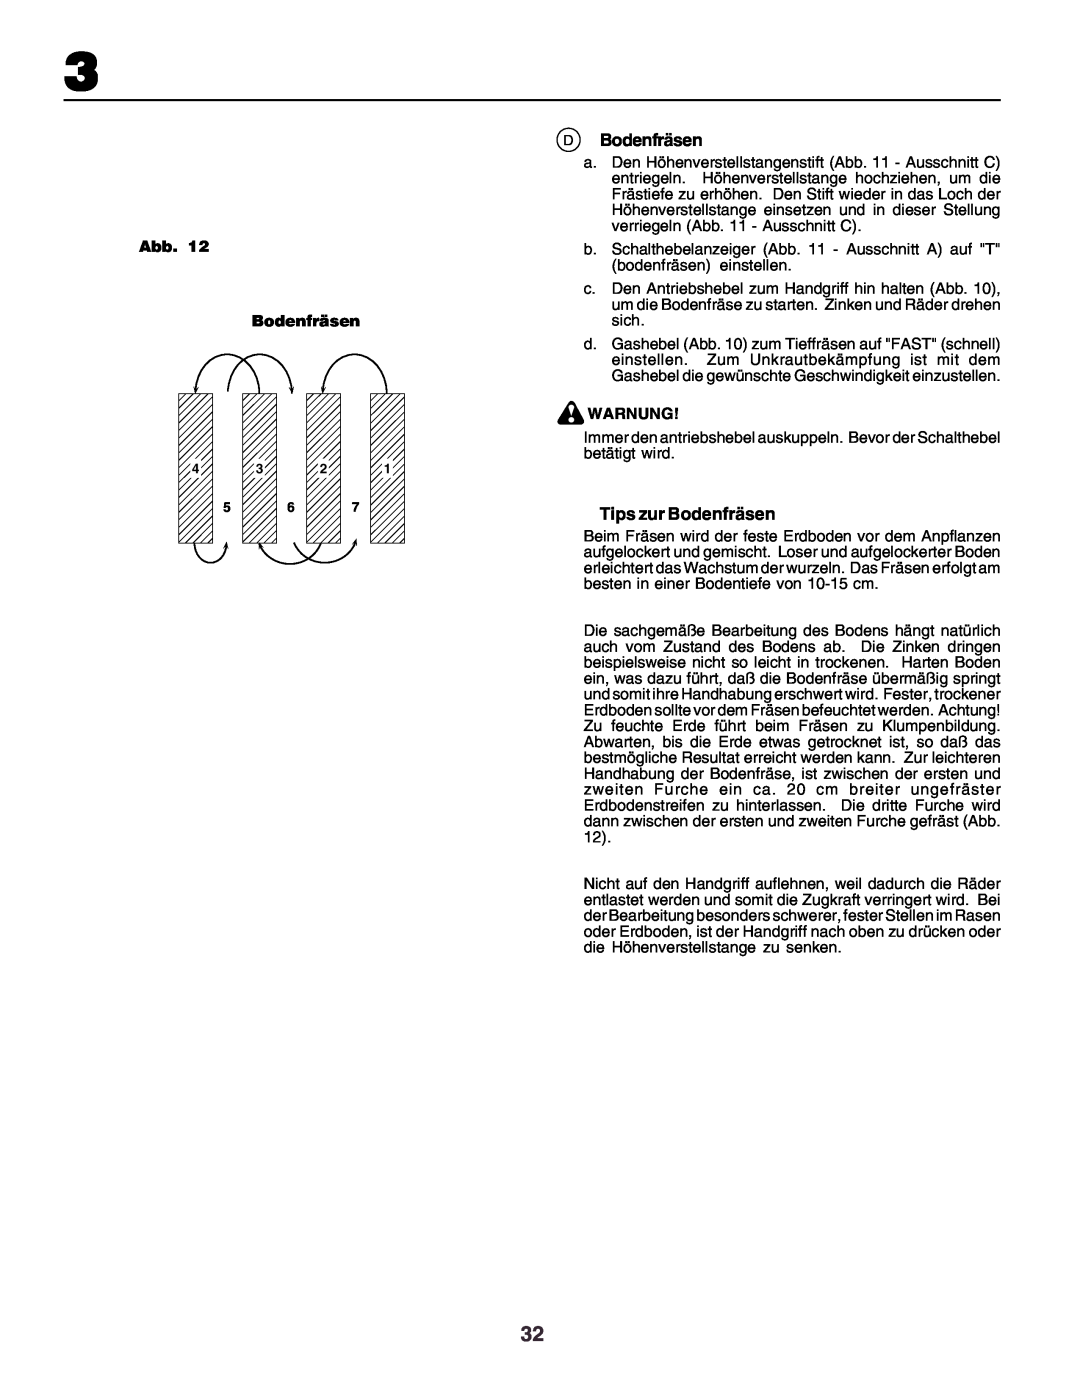 Husqvarna crt51 instruction manual DBodenfräsen, Tips zur Bodenfräsen, Abb. Bodenfräsen, Warnung 